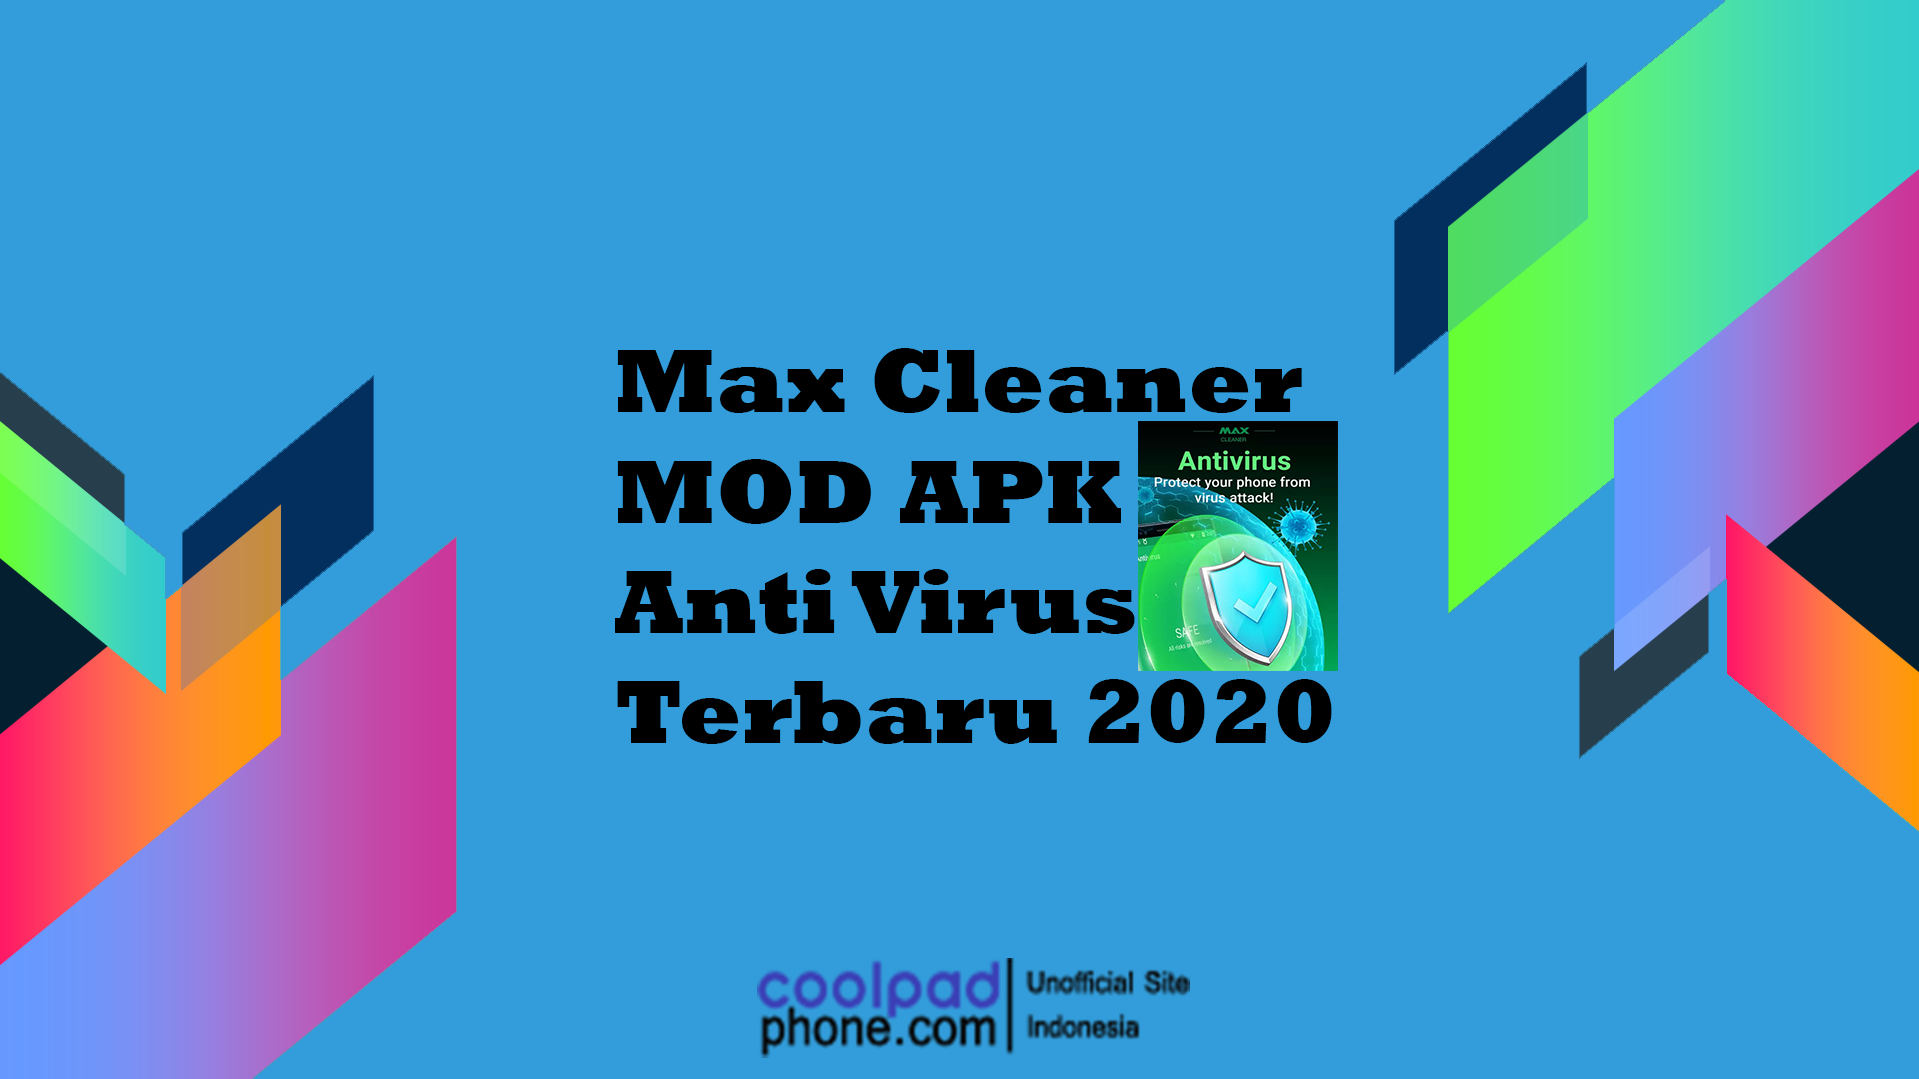 Max Cleaner MOD APK Anti Virus Terbaru 2020 CoolPadPhone.com